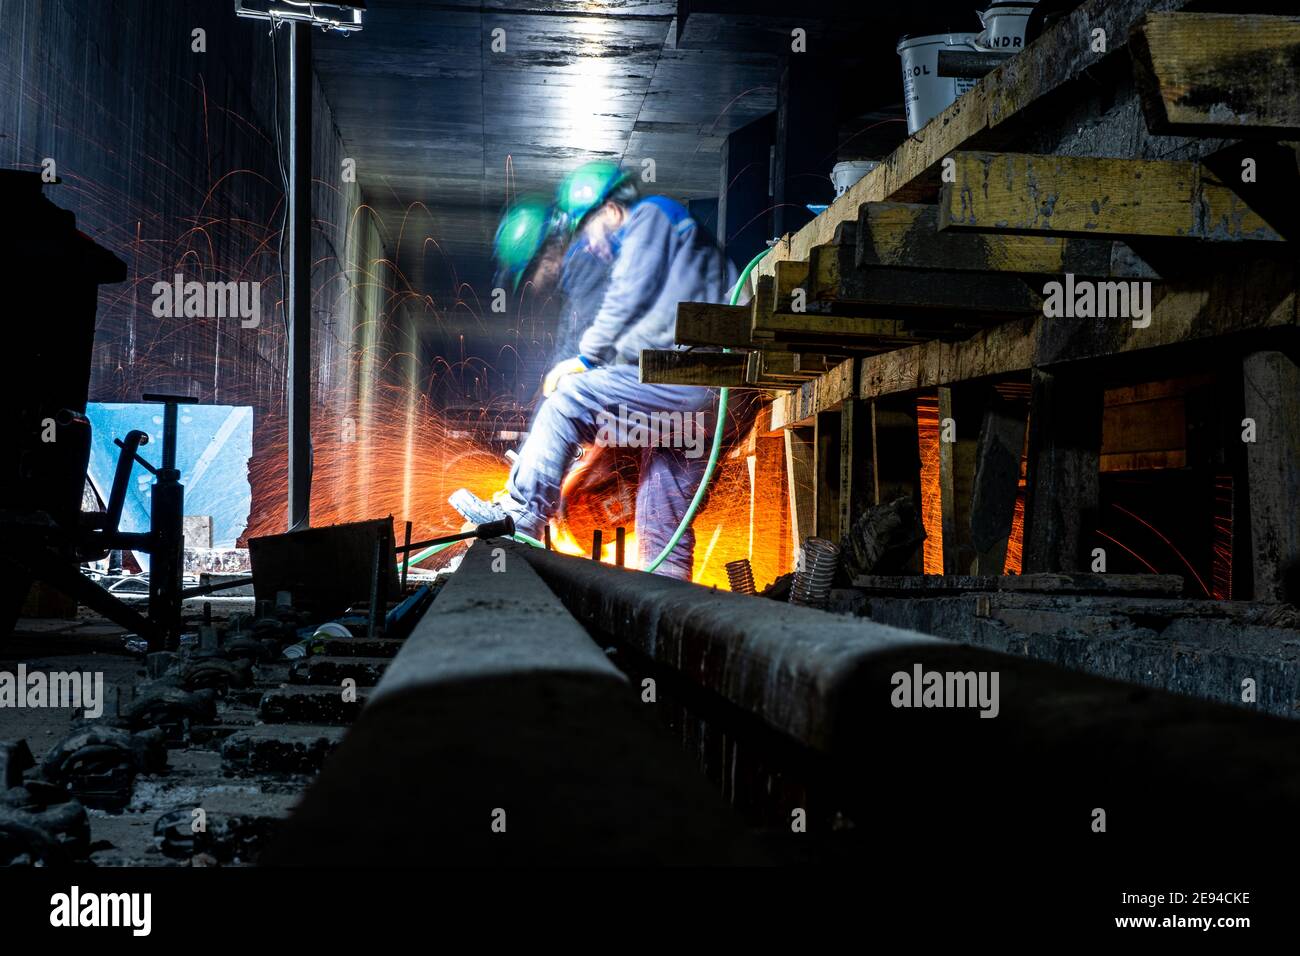 Soudage sur rail Thermite (exothermique) à l'intérieur d'un projet de tunnel de métro Banque D'Images